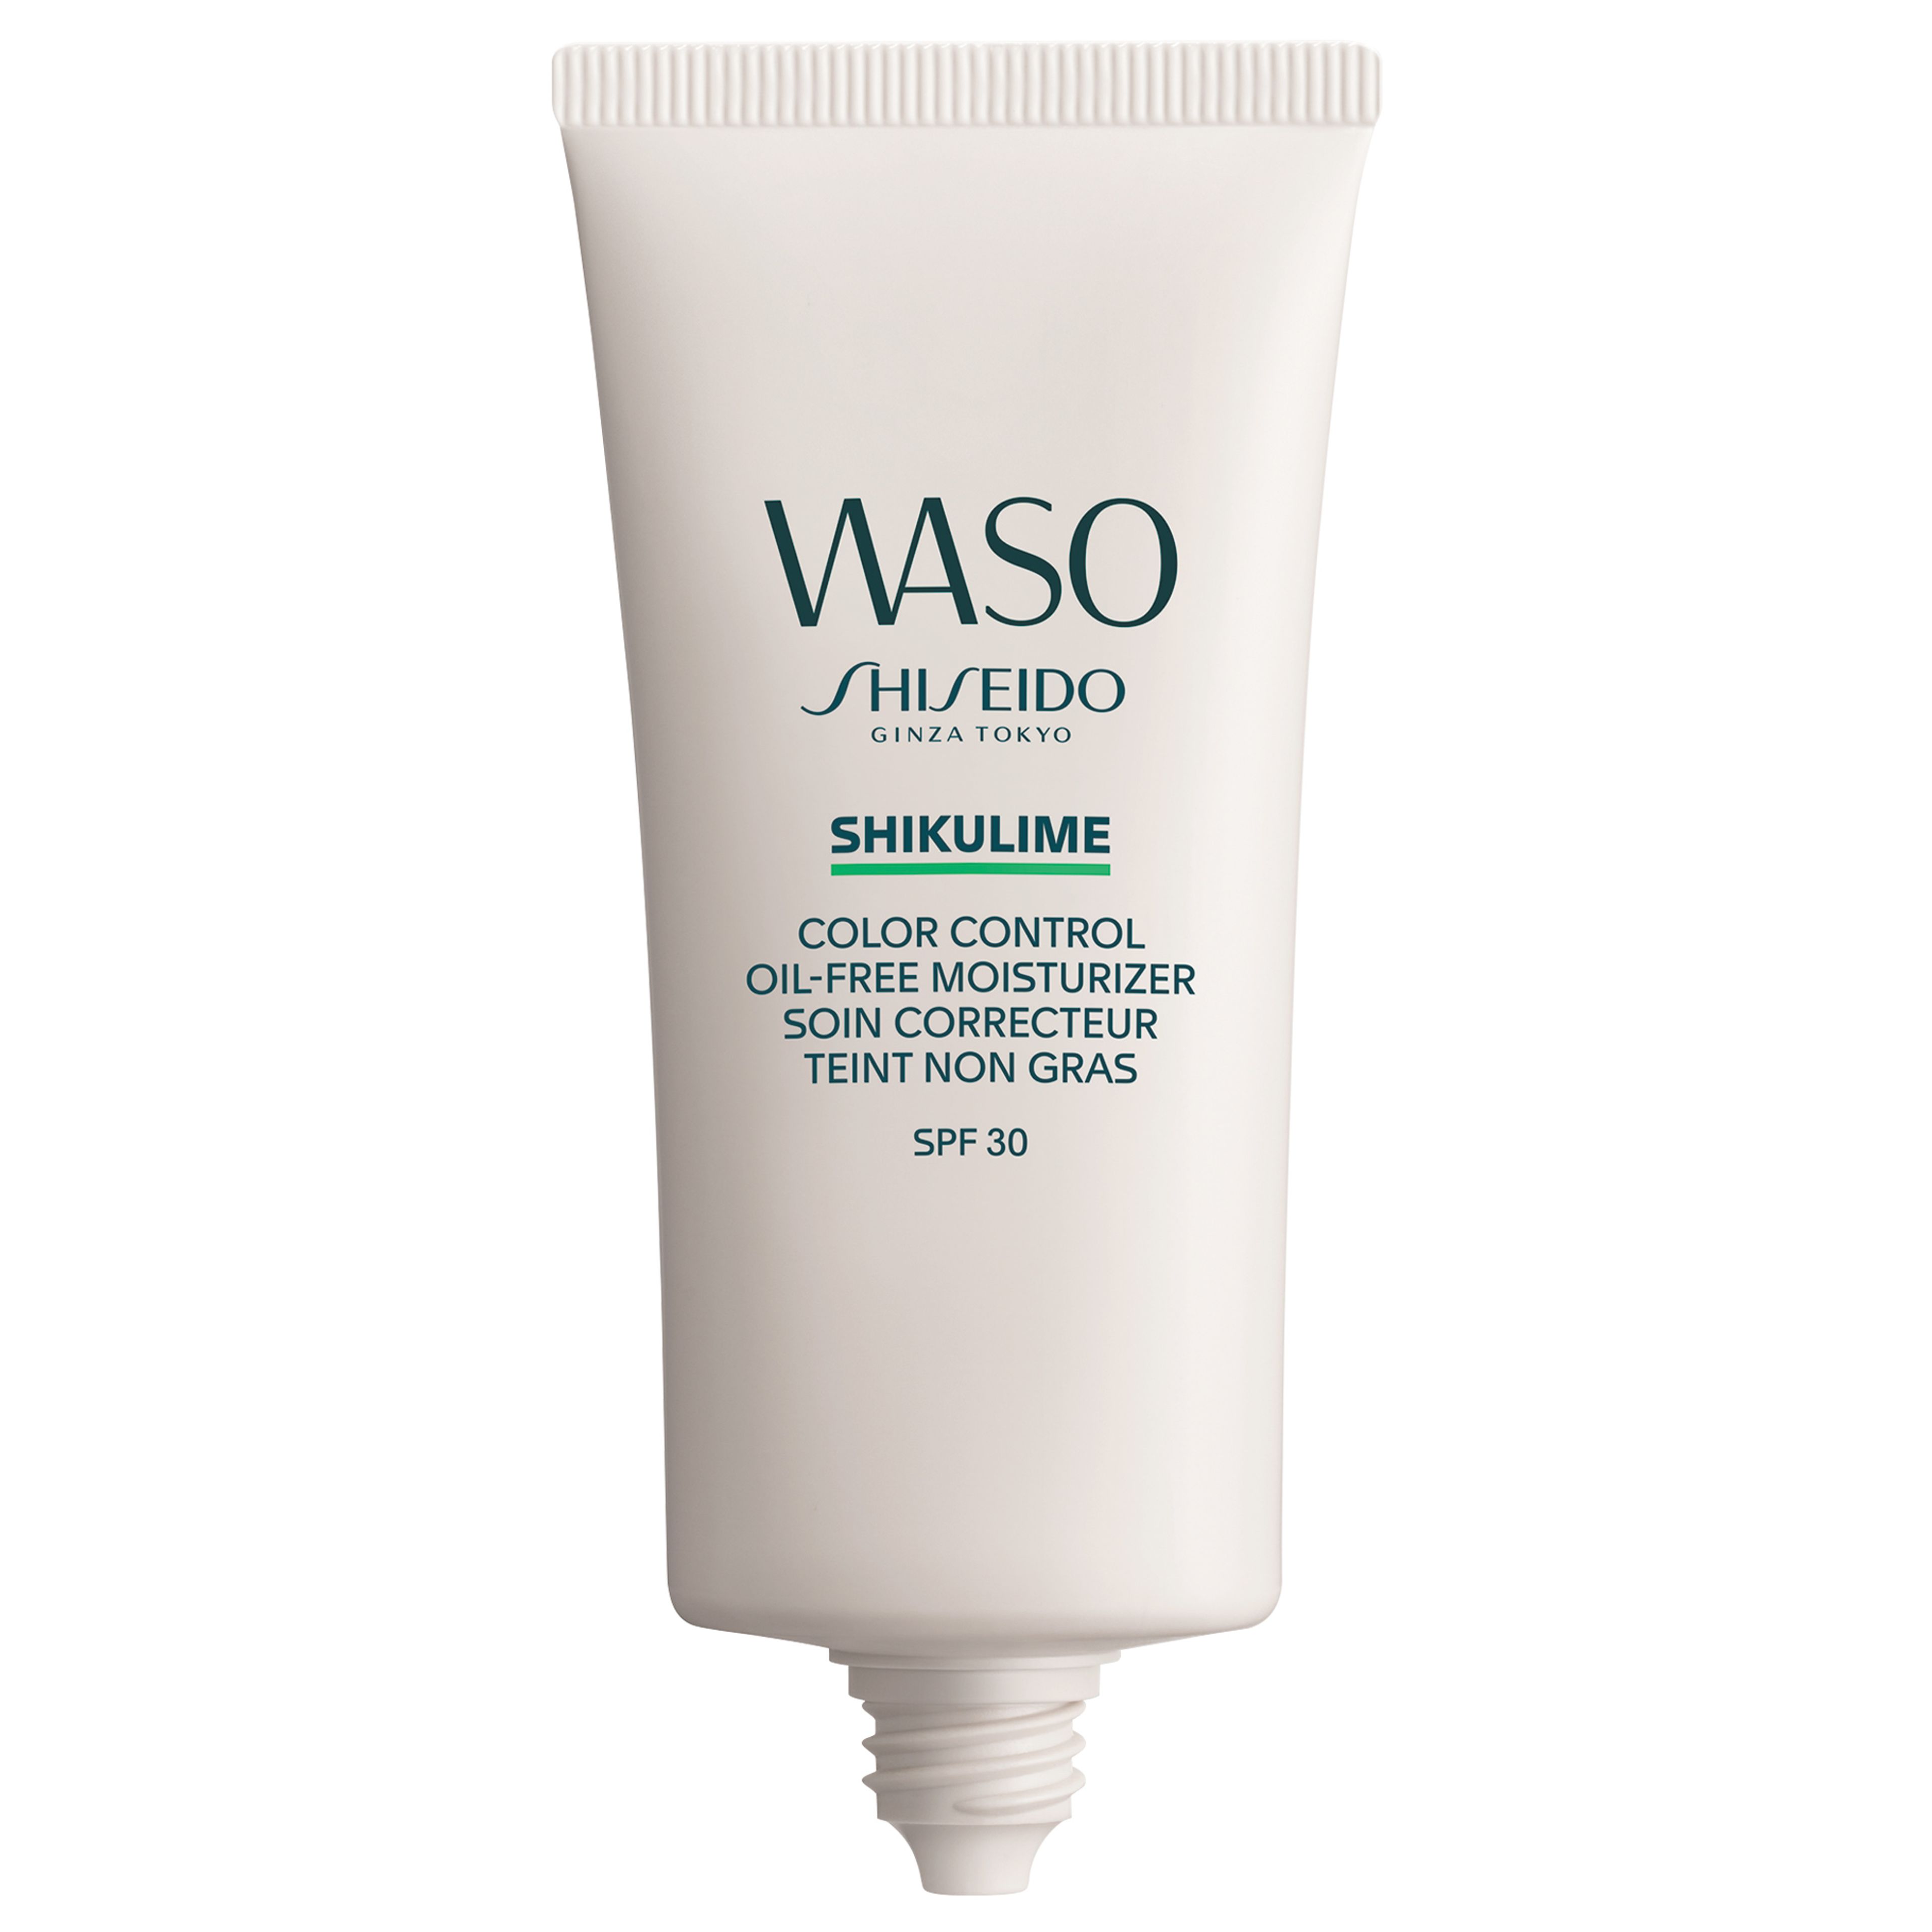 Waso Color Control Oil-free Moisturizer - Crema Idratante Colorata Shiseido 2